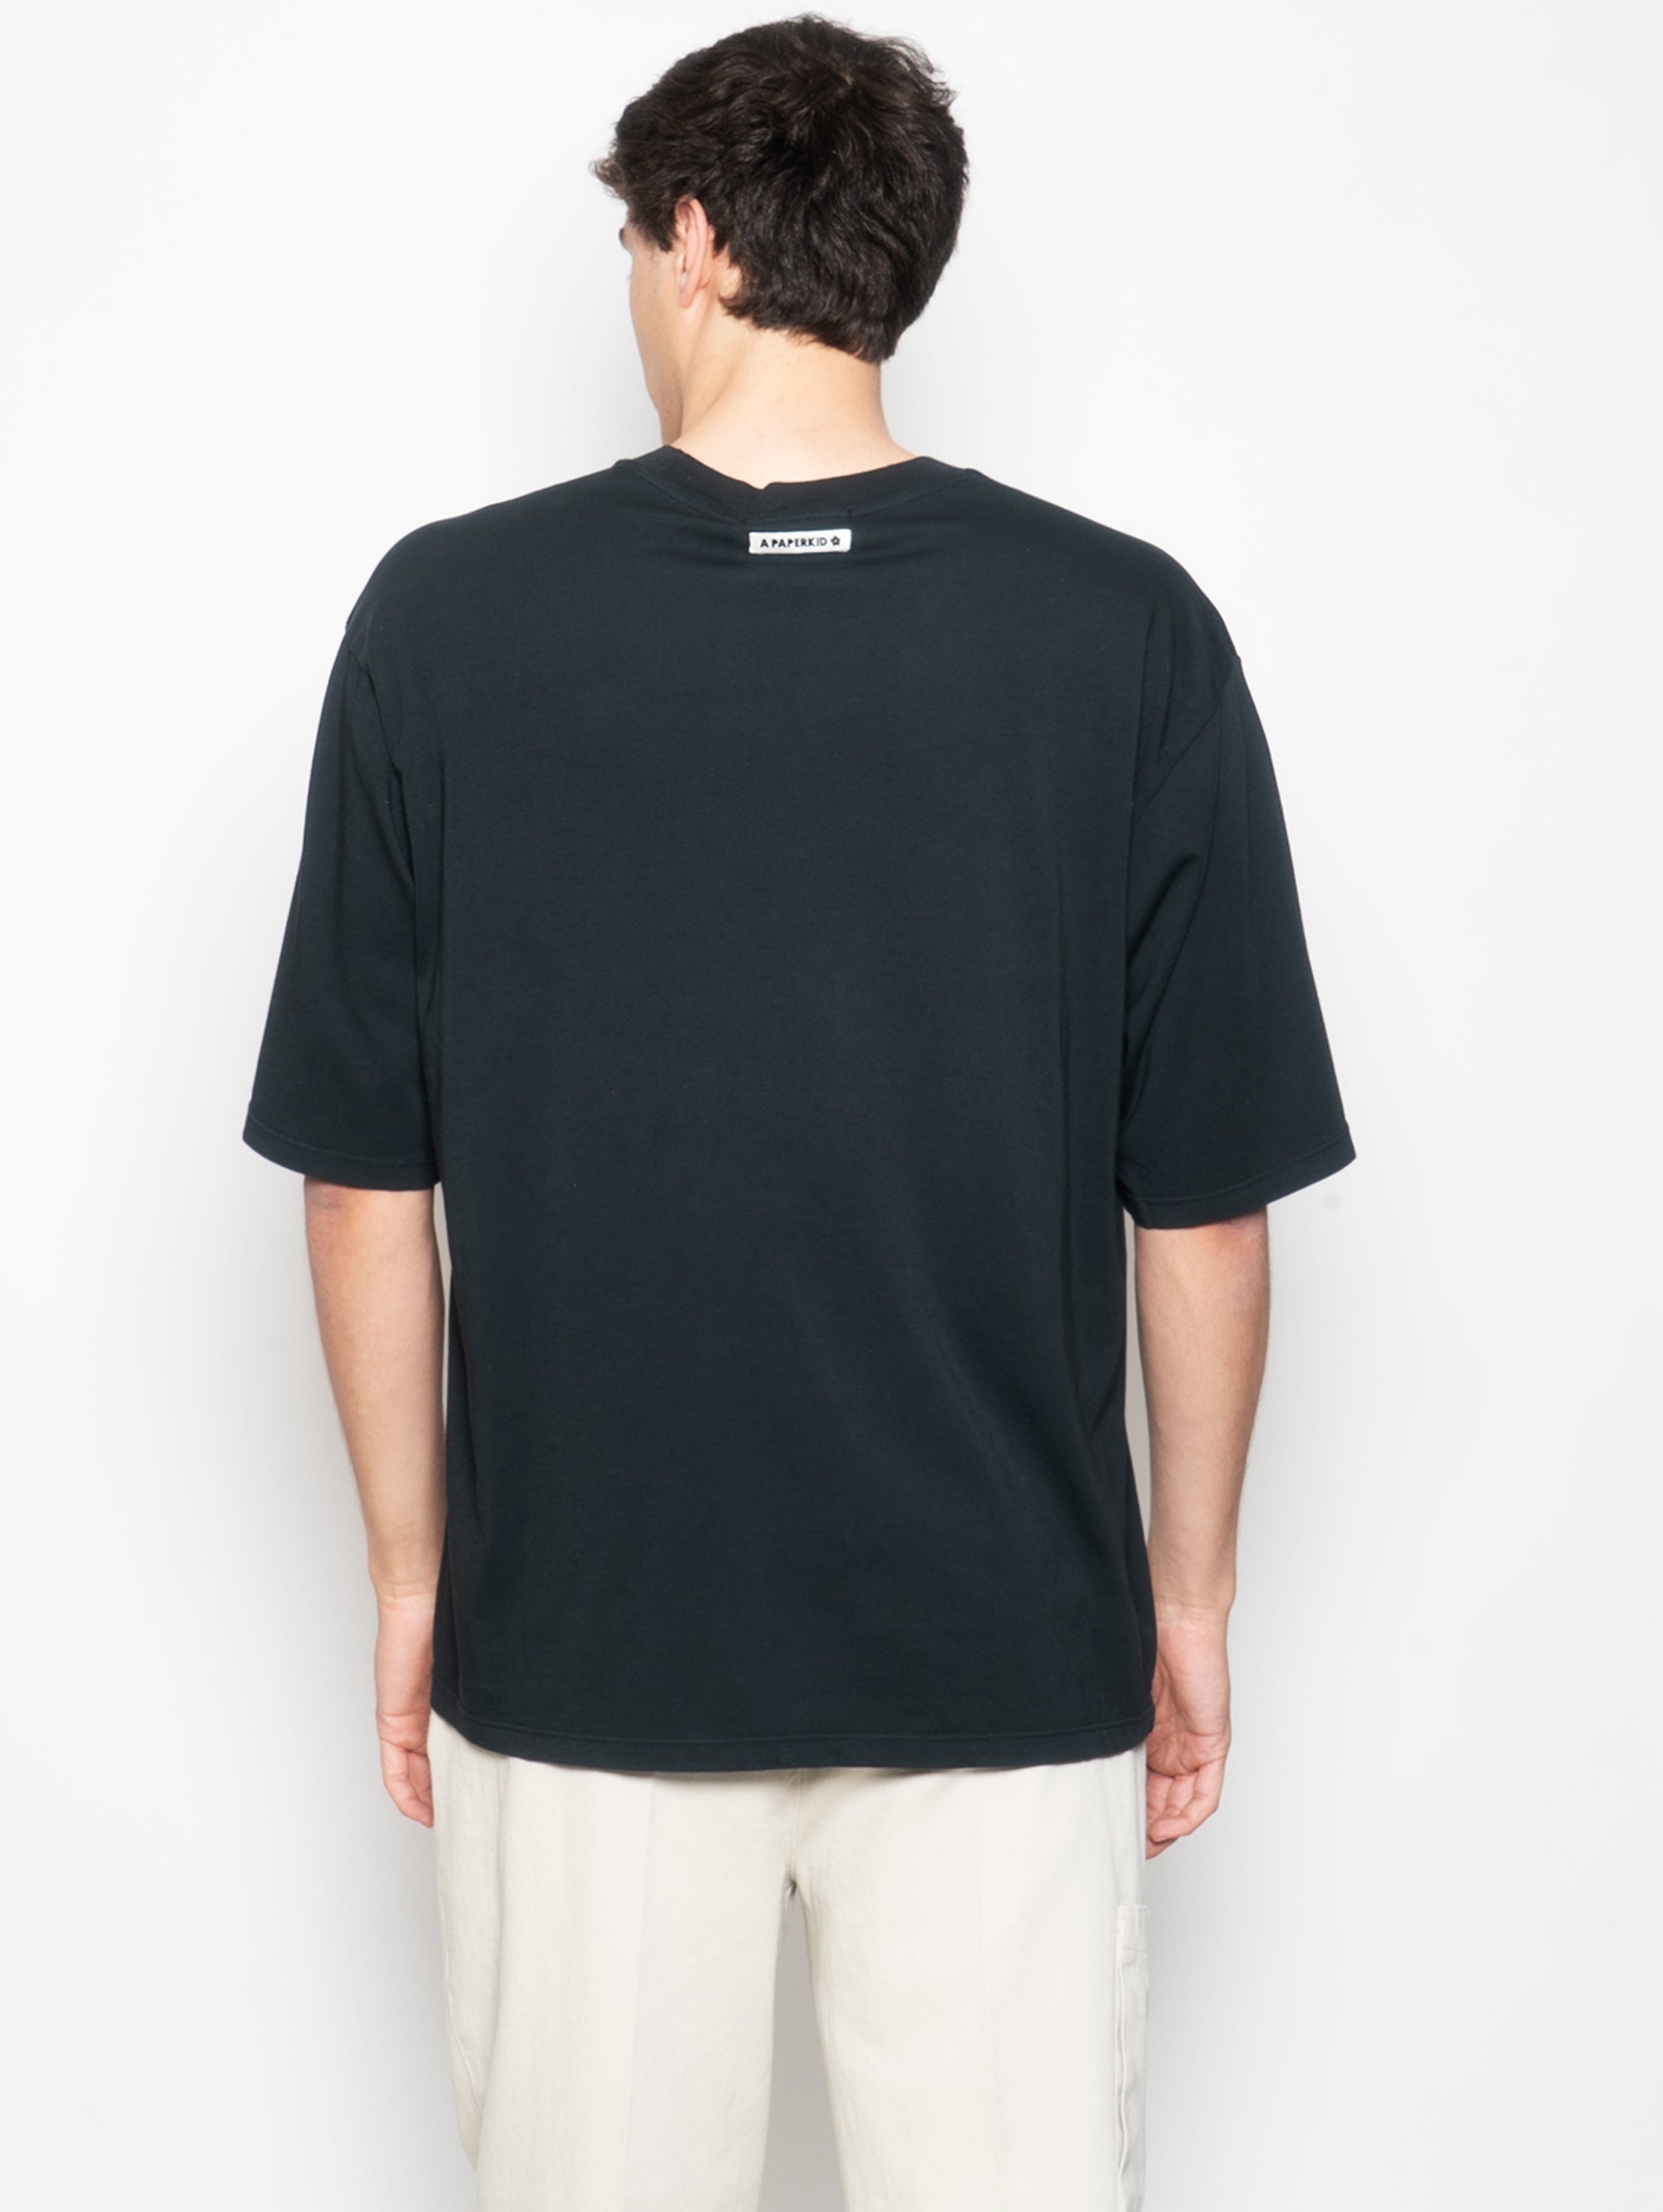 Schwarzes T-Shirt mit aufgesetzter Brosche